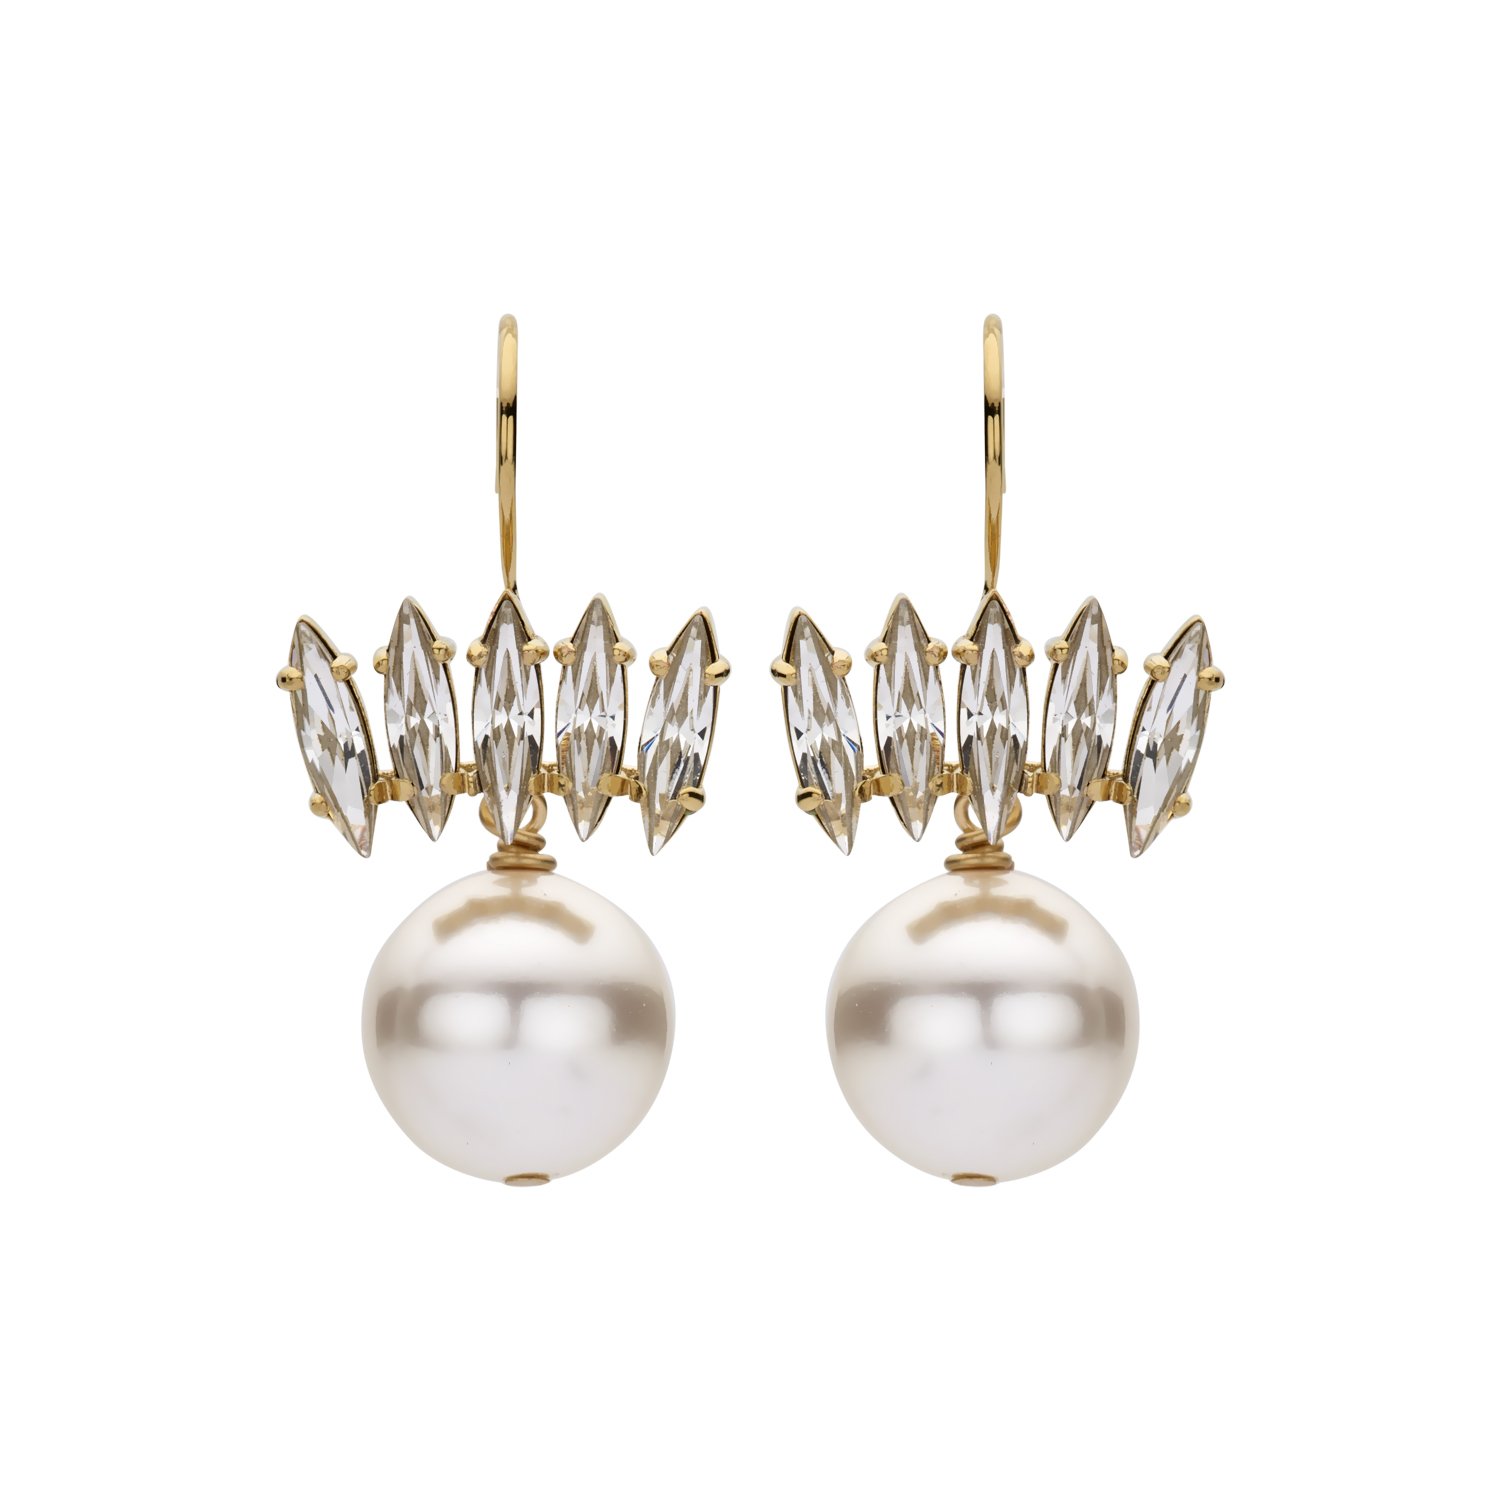 Navets ivory bridal earrings